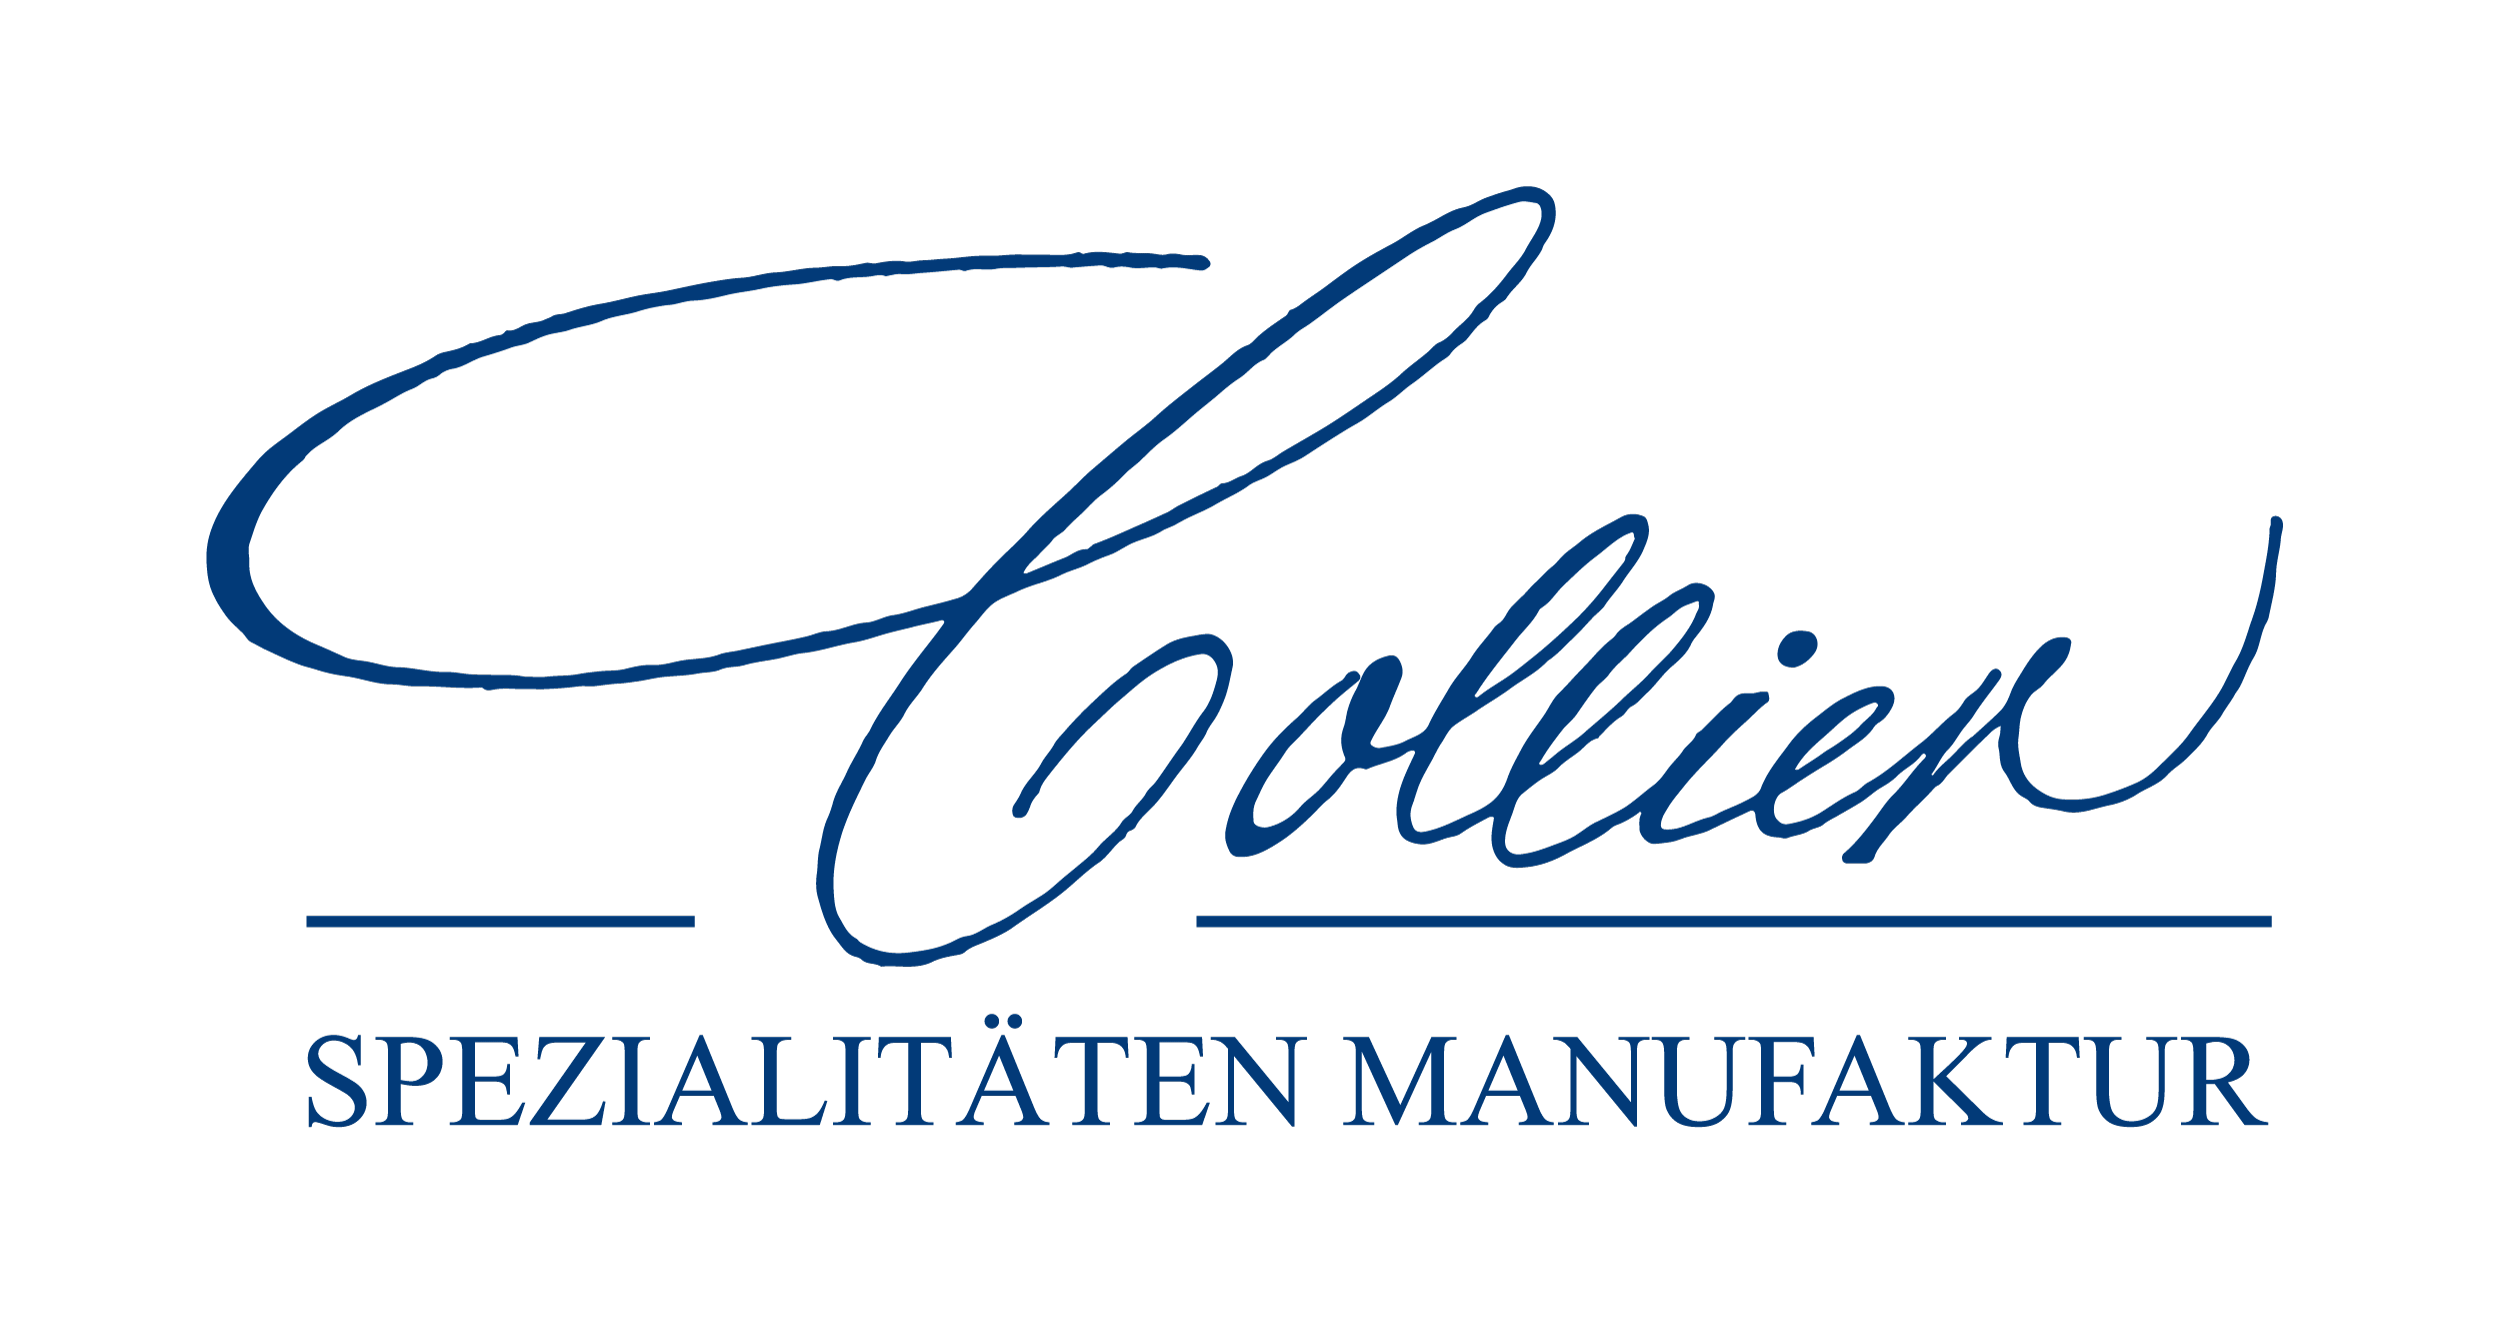 KG Collier Spezialitäten Manufaktur GmbH & Co.